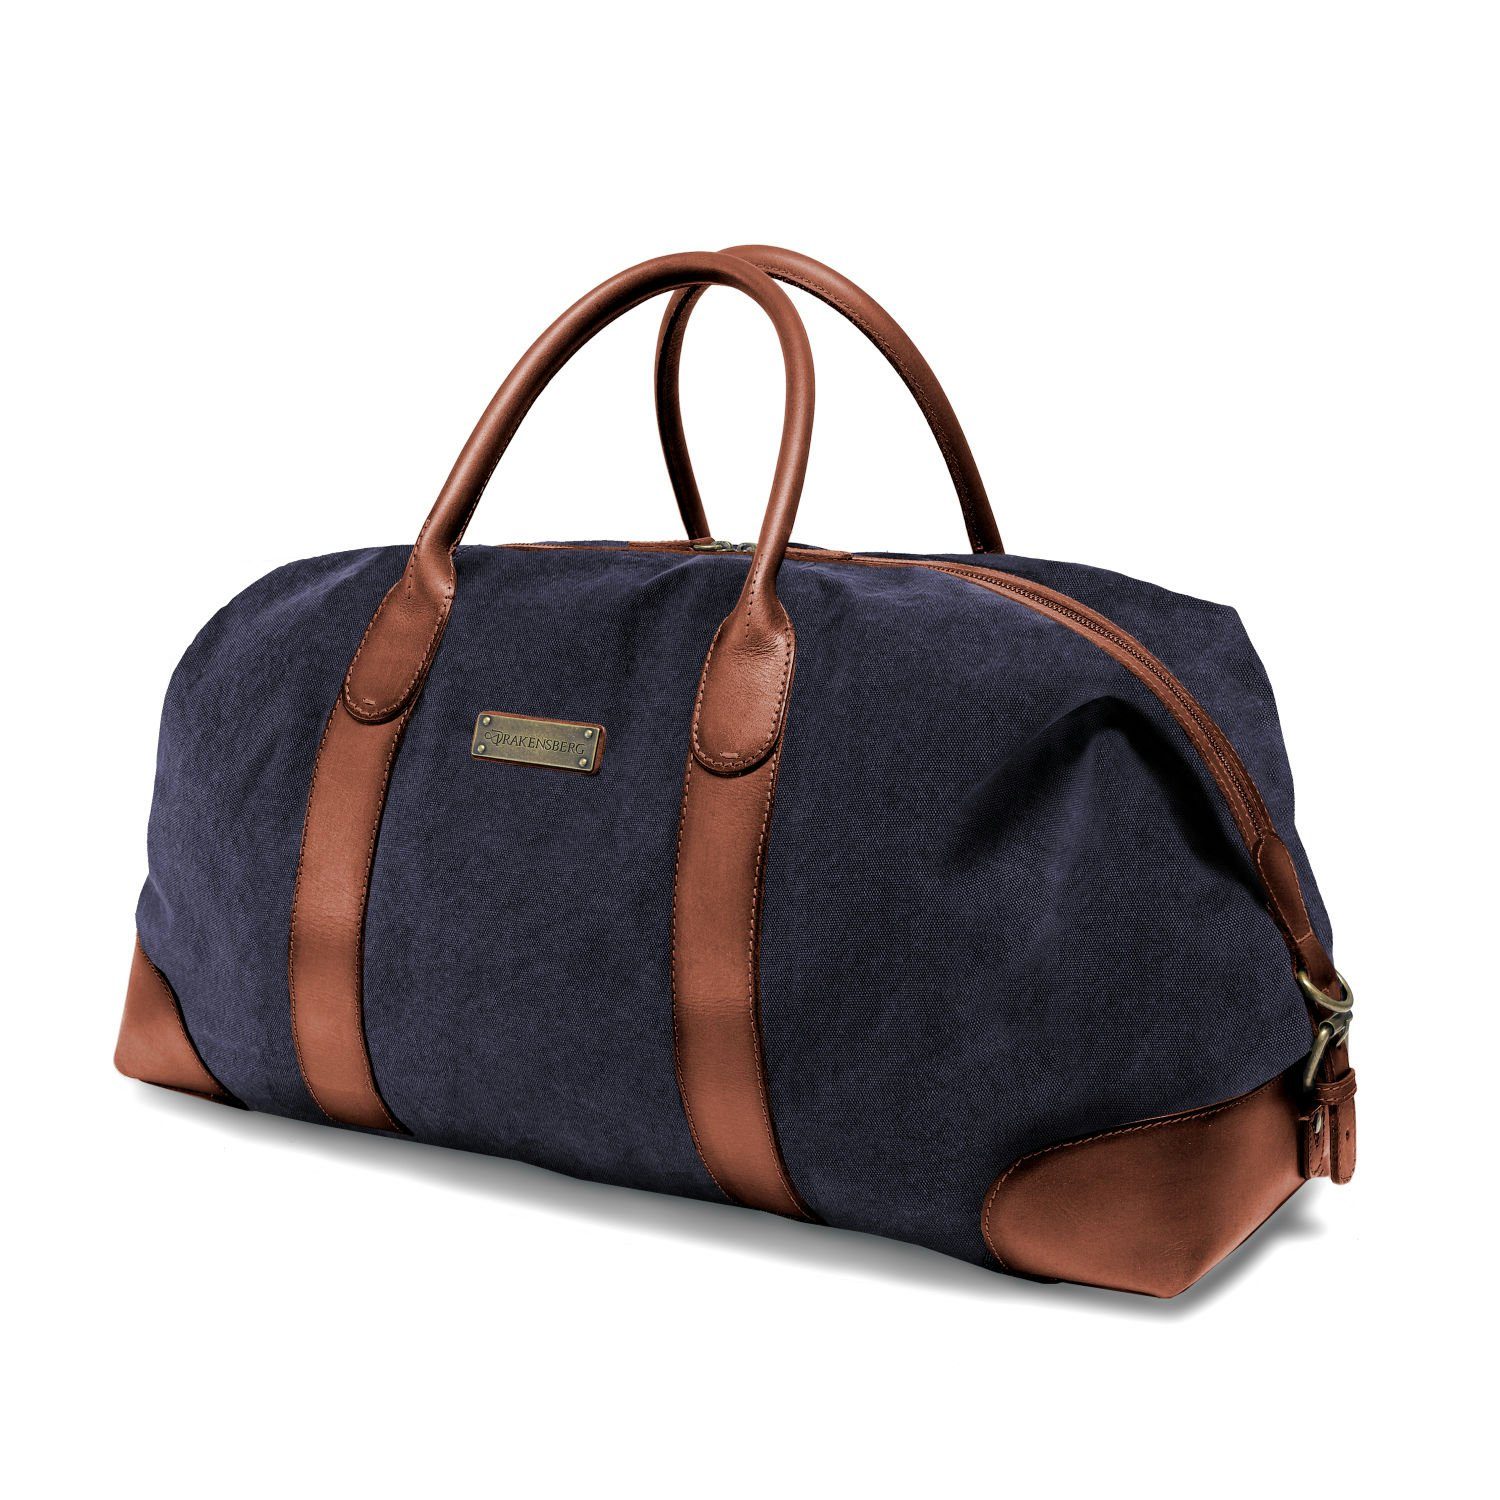 Damen Taschen Reisetaschen und Weekender Reisenthel Reisetasche in Blau 